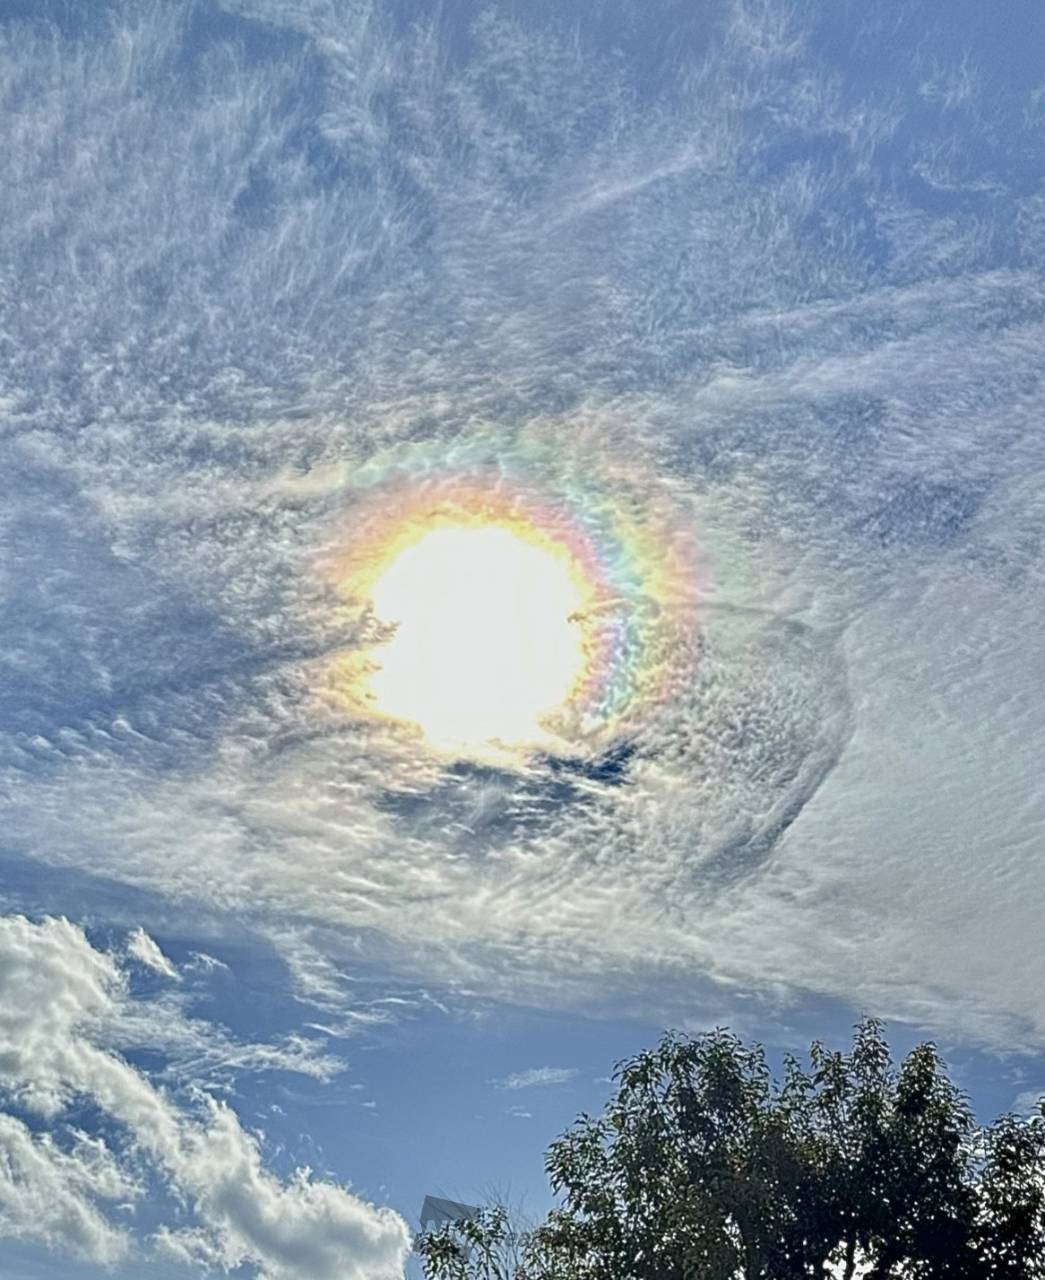 彩雲日和 注目の空の写真 ウェザーニュース